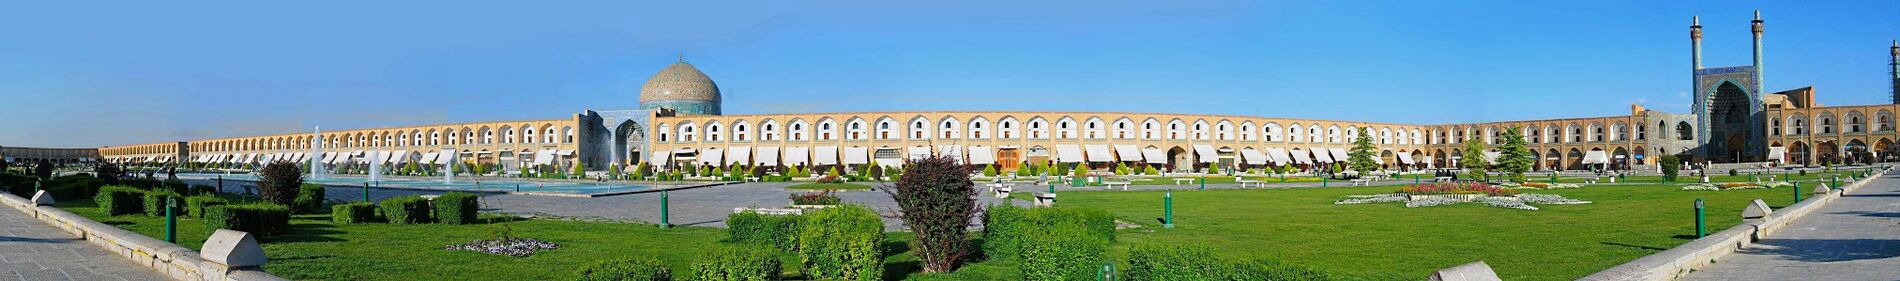 תצלום פנורמי של המרכז ההיסטורי של העיר אספהאן במרכז איראן (לצפייה הזיזו עם העכבר את סרגל הגלילה בתחתית התמונה)